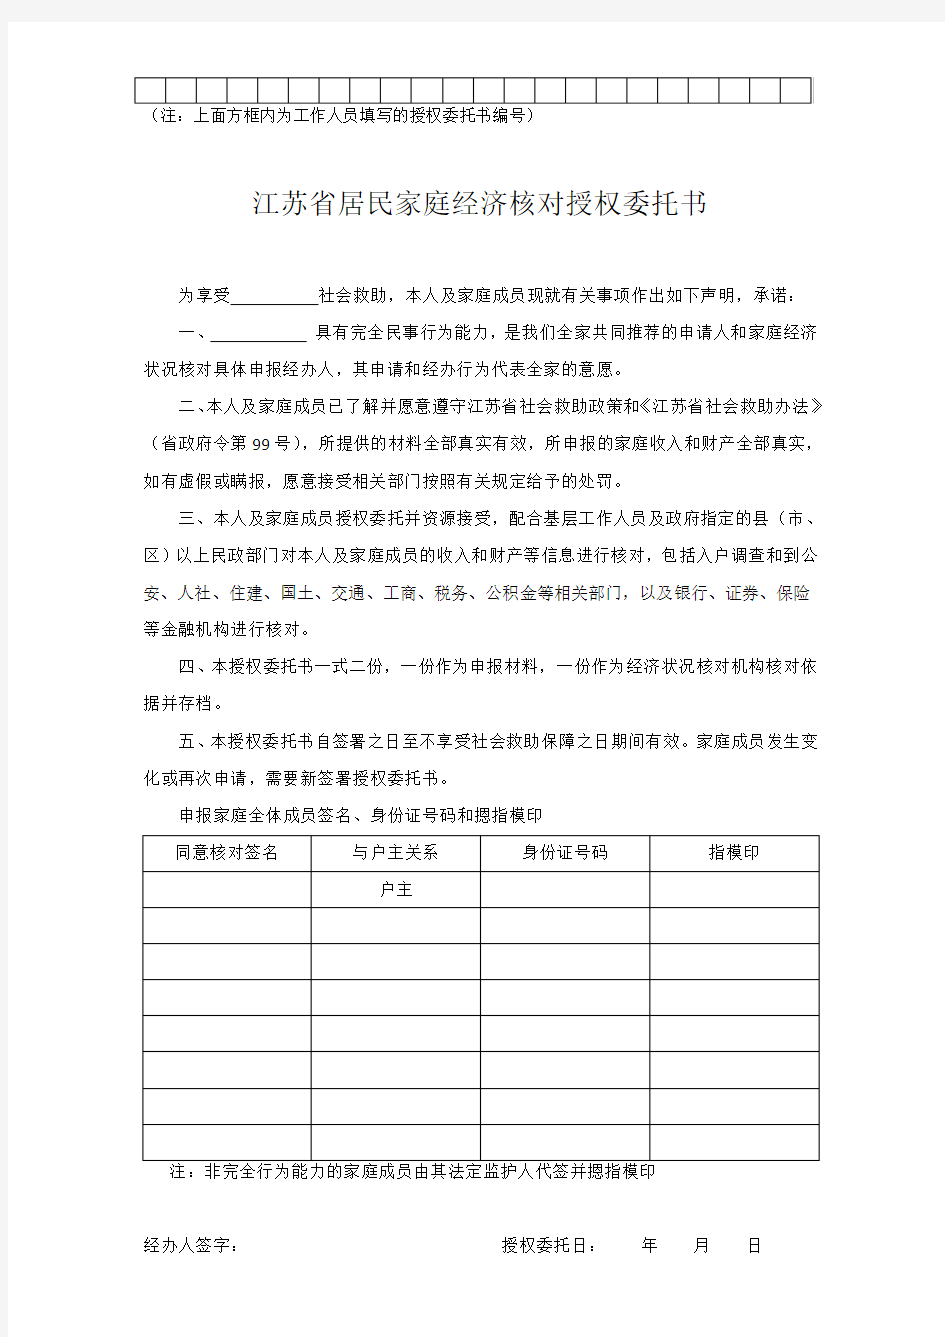 江苏省居民家庭经济核对授权委托书